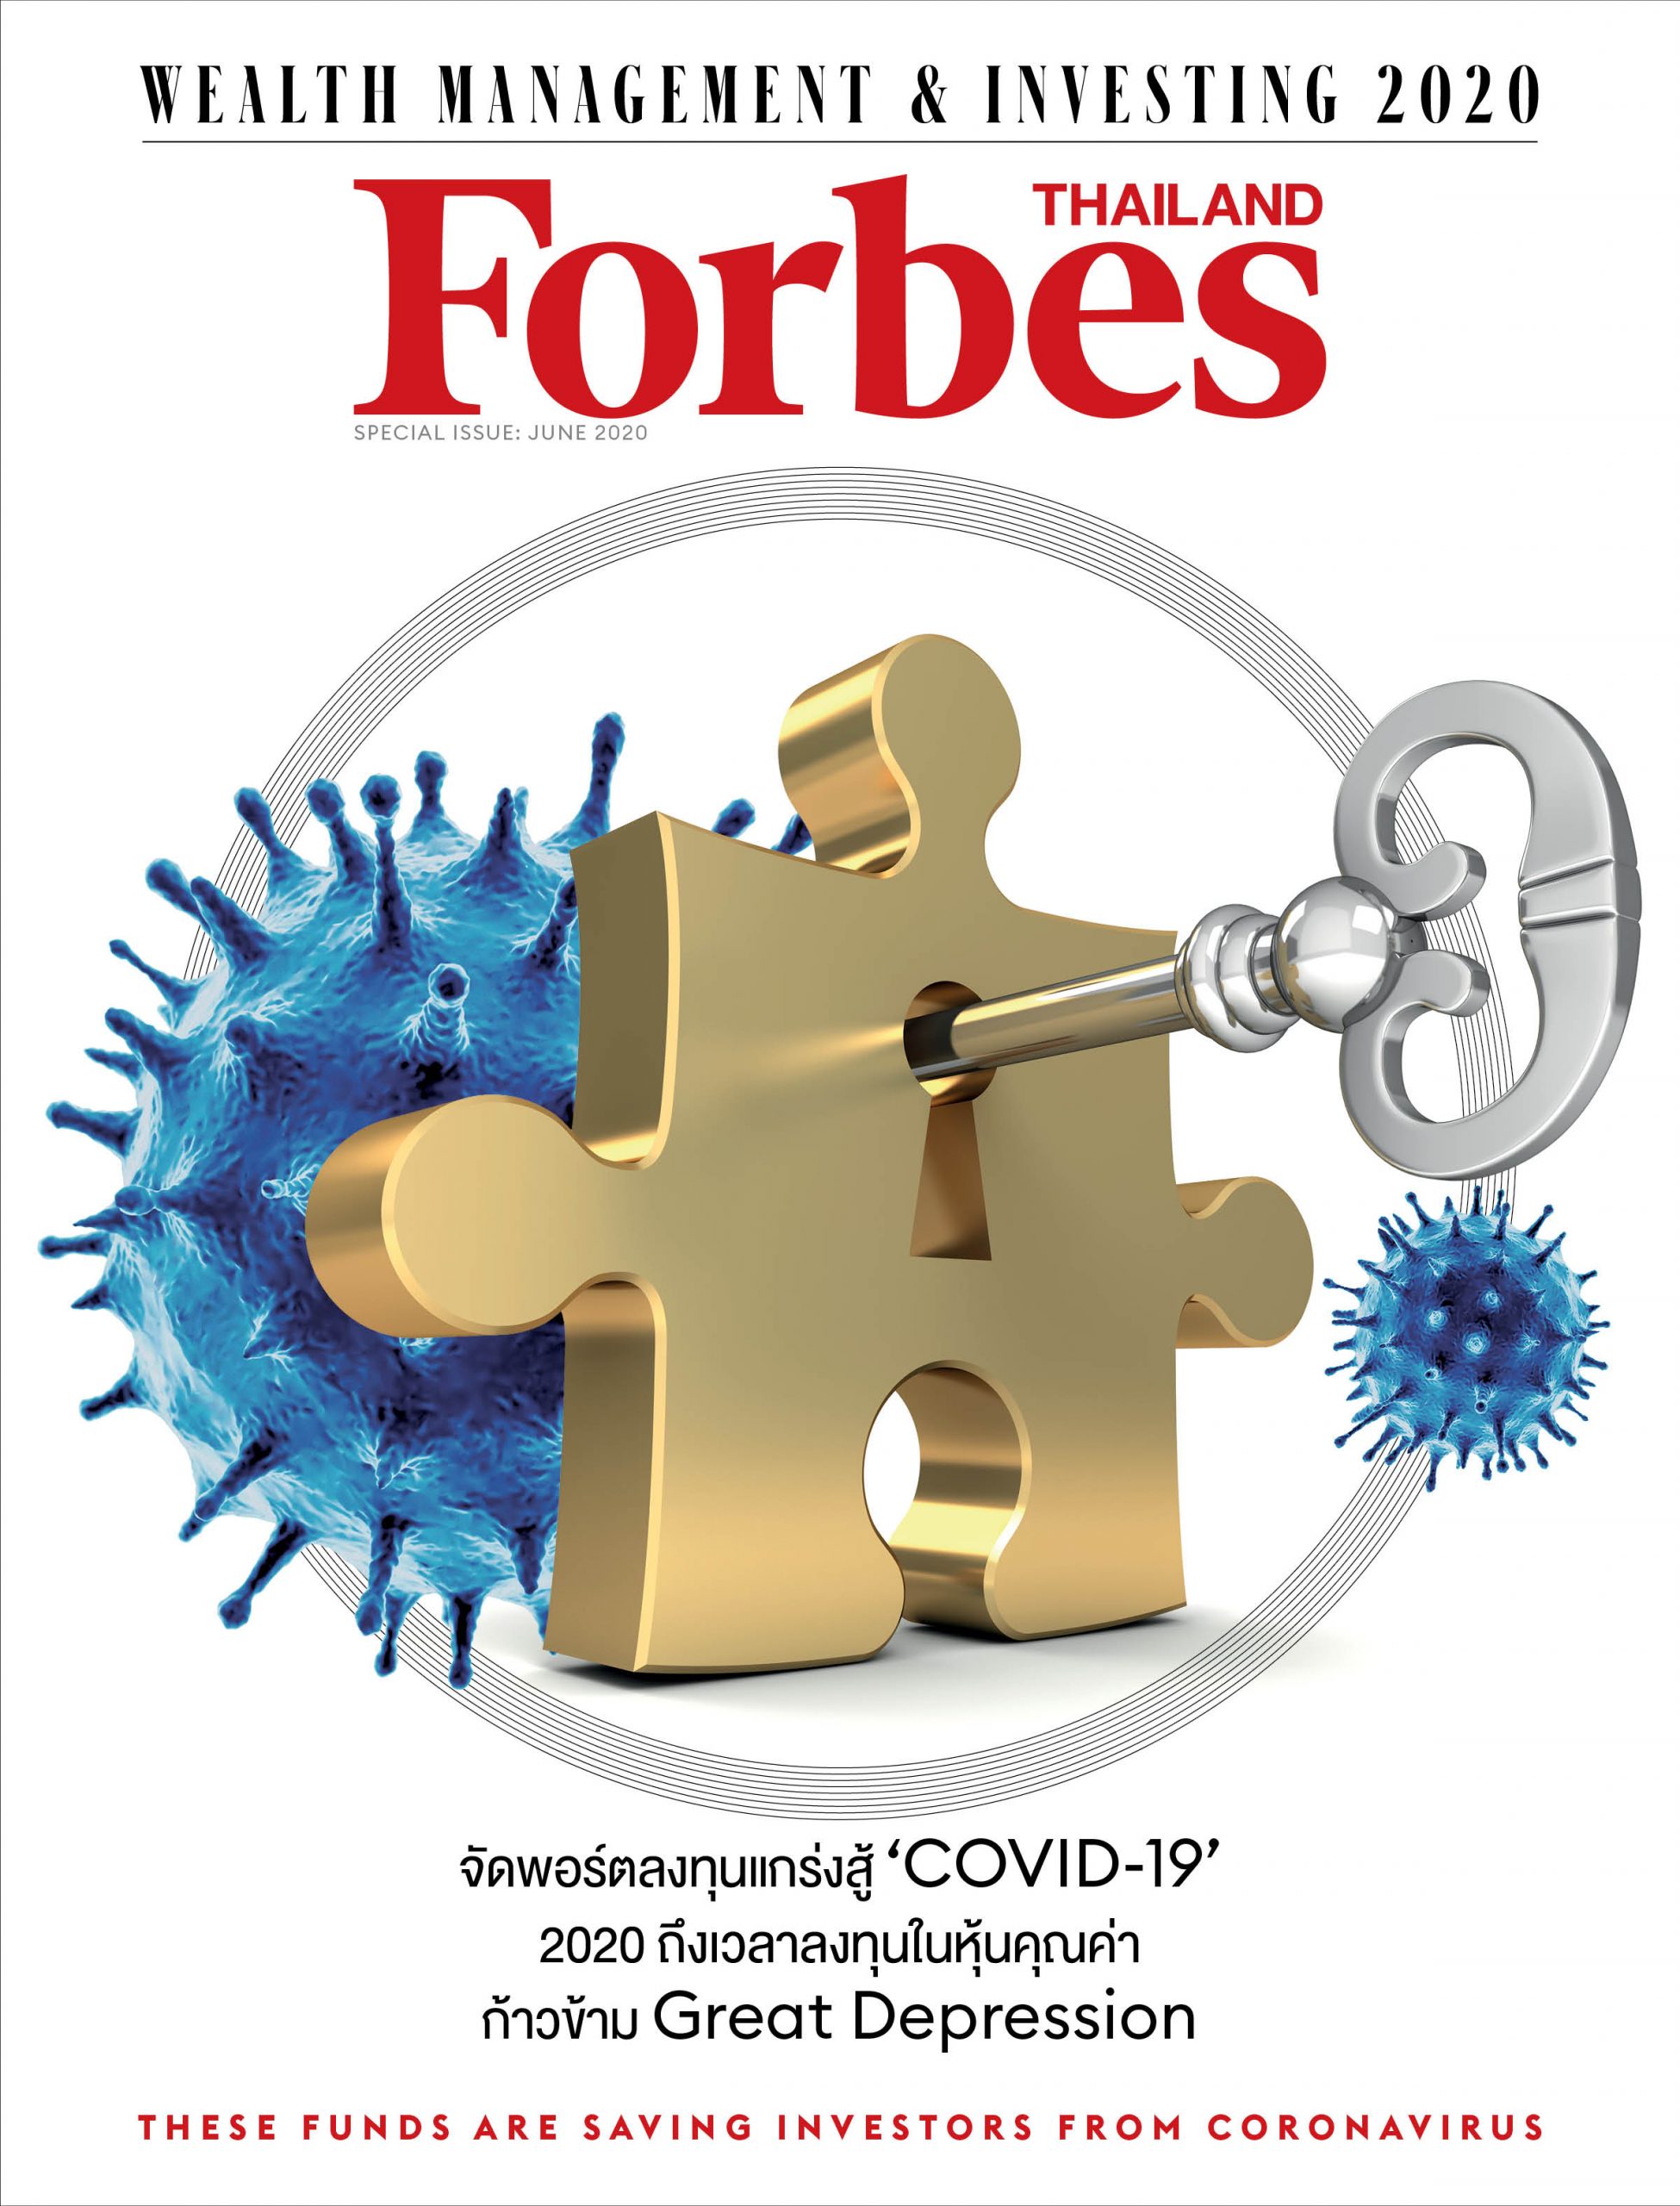 นิตยสาร Forbes Thailand ครบรอบ 7 ปี โฉมใหม่เนื้อหาเข้มข้นหลากหลาย คู่คิดนักธุรกิจไทย